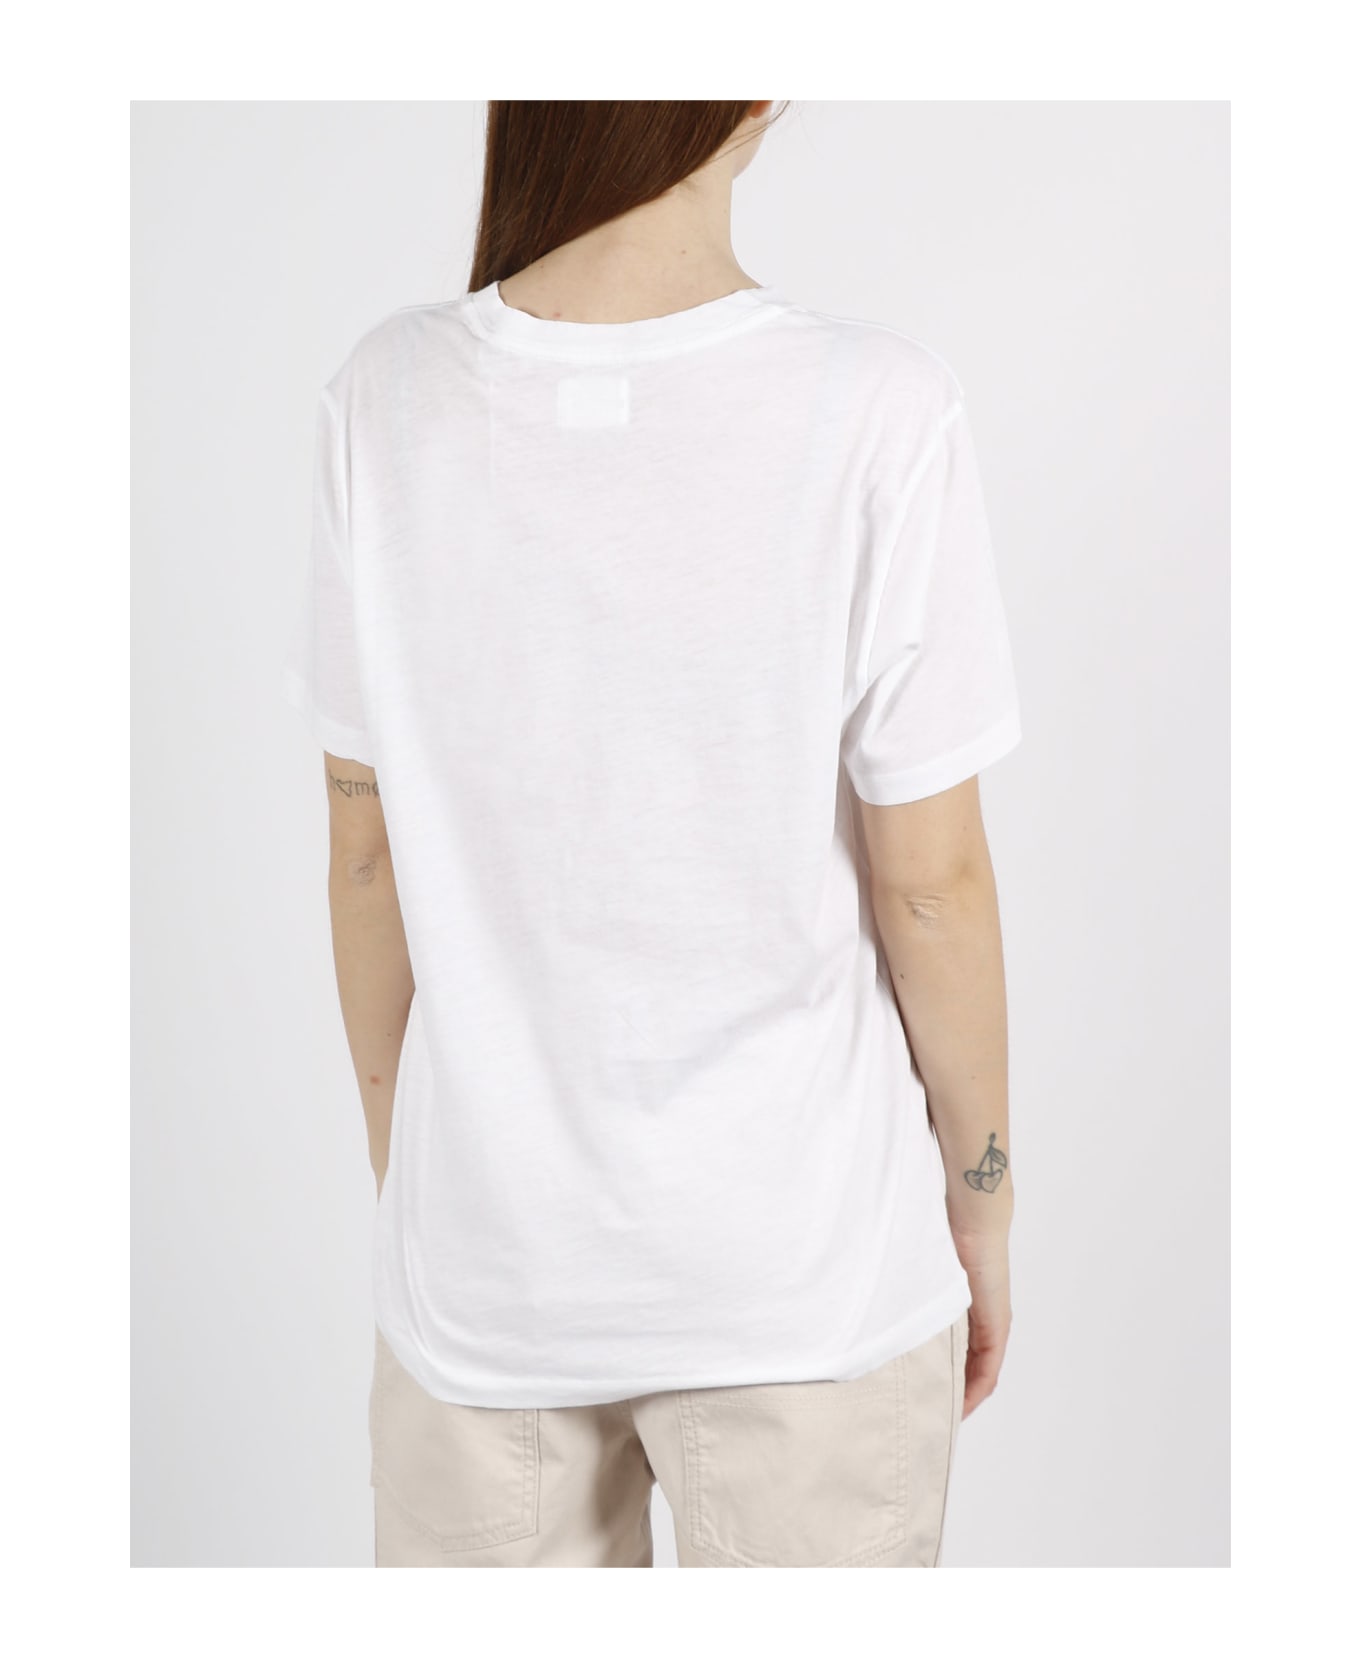 Marant Étoile Zewel T-shirt - White